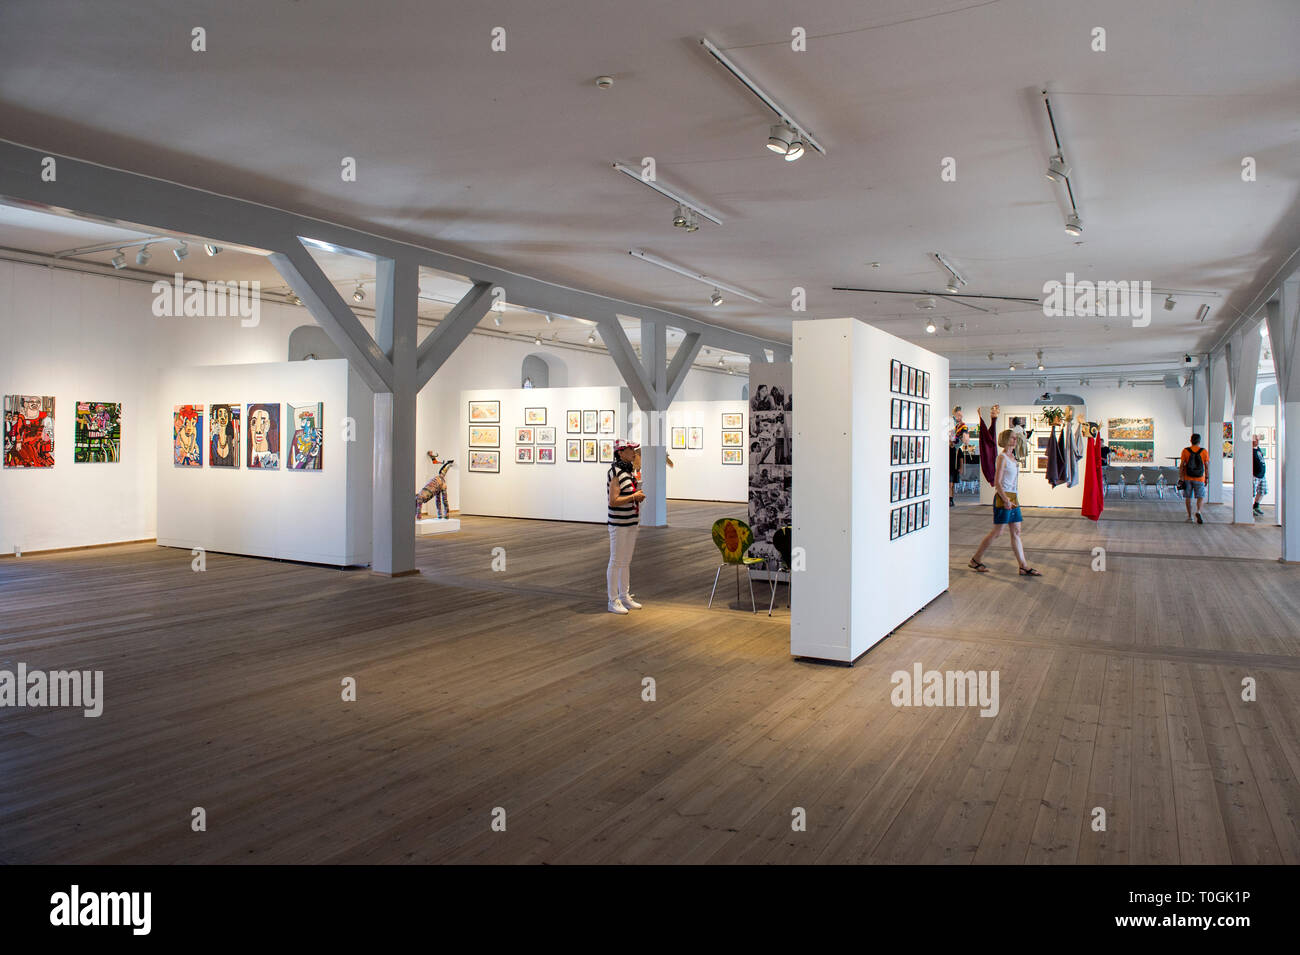 Denmark, Copenaghen, Rundetaarn, the Round Tower, exhibition hall Stock Photo